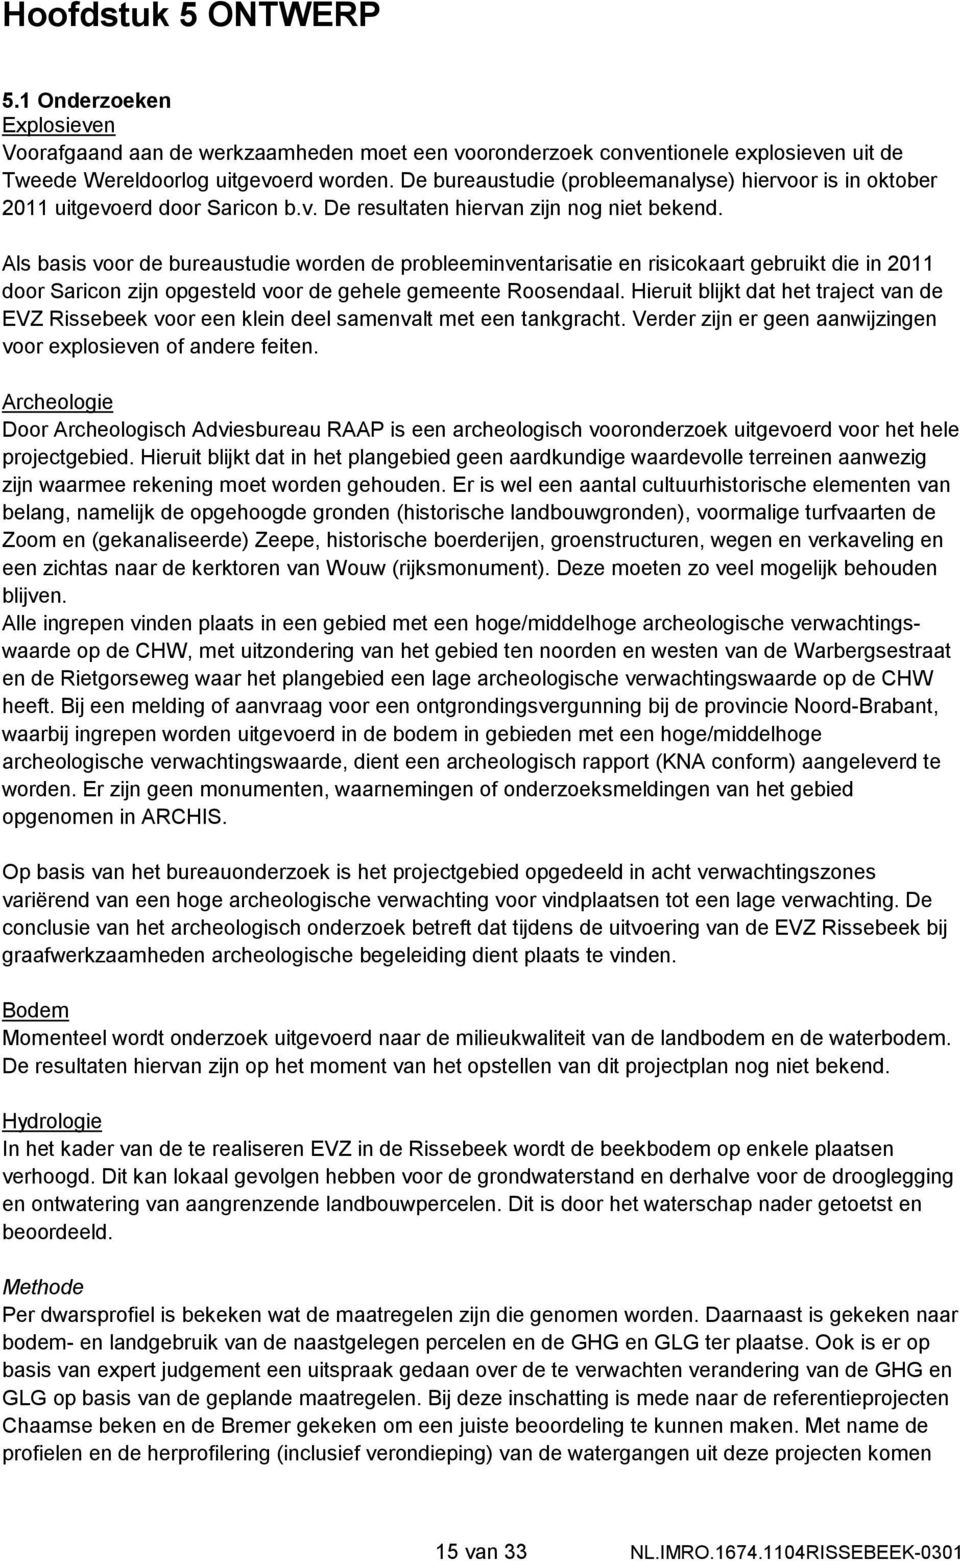 Als basis voor de bureaustudie worden de probleeminventarisatie en risicokaart gebruikt die in 2011 door Saricon zijn opgesteld voor de gehele gemeente Roosendaal.